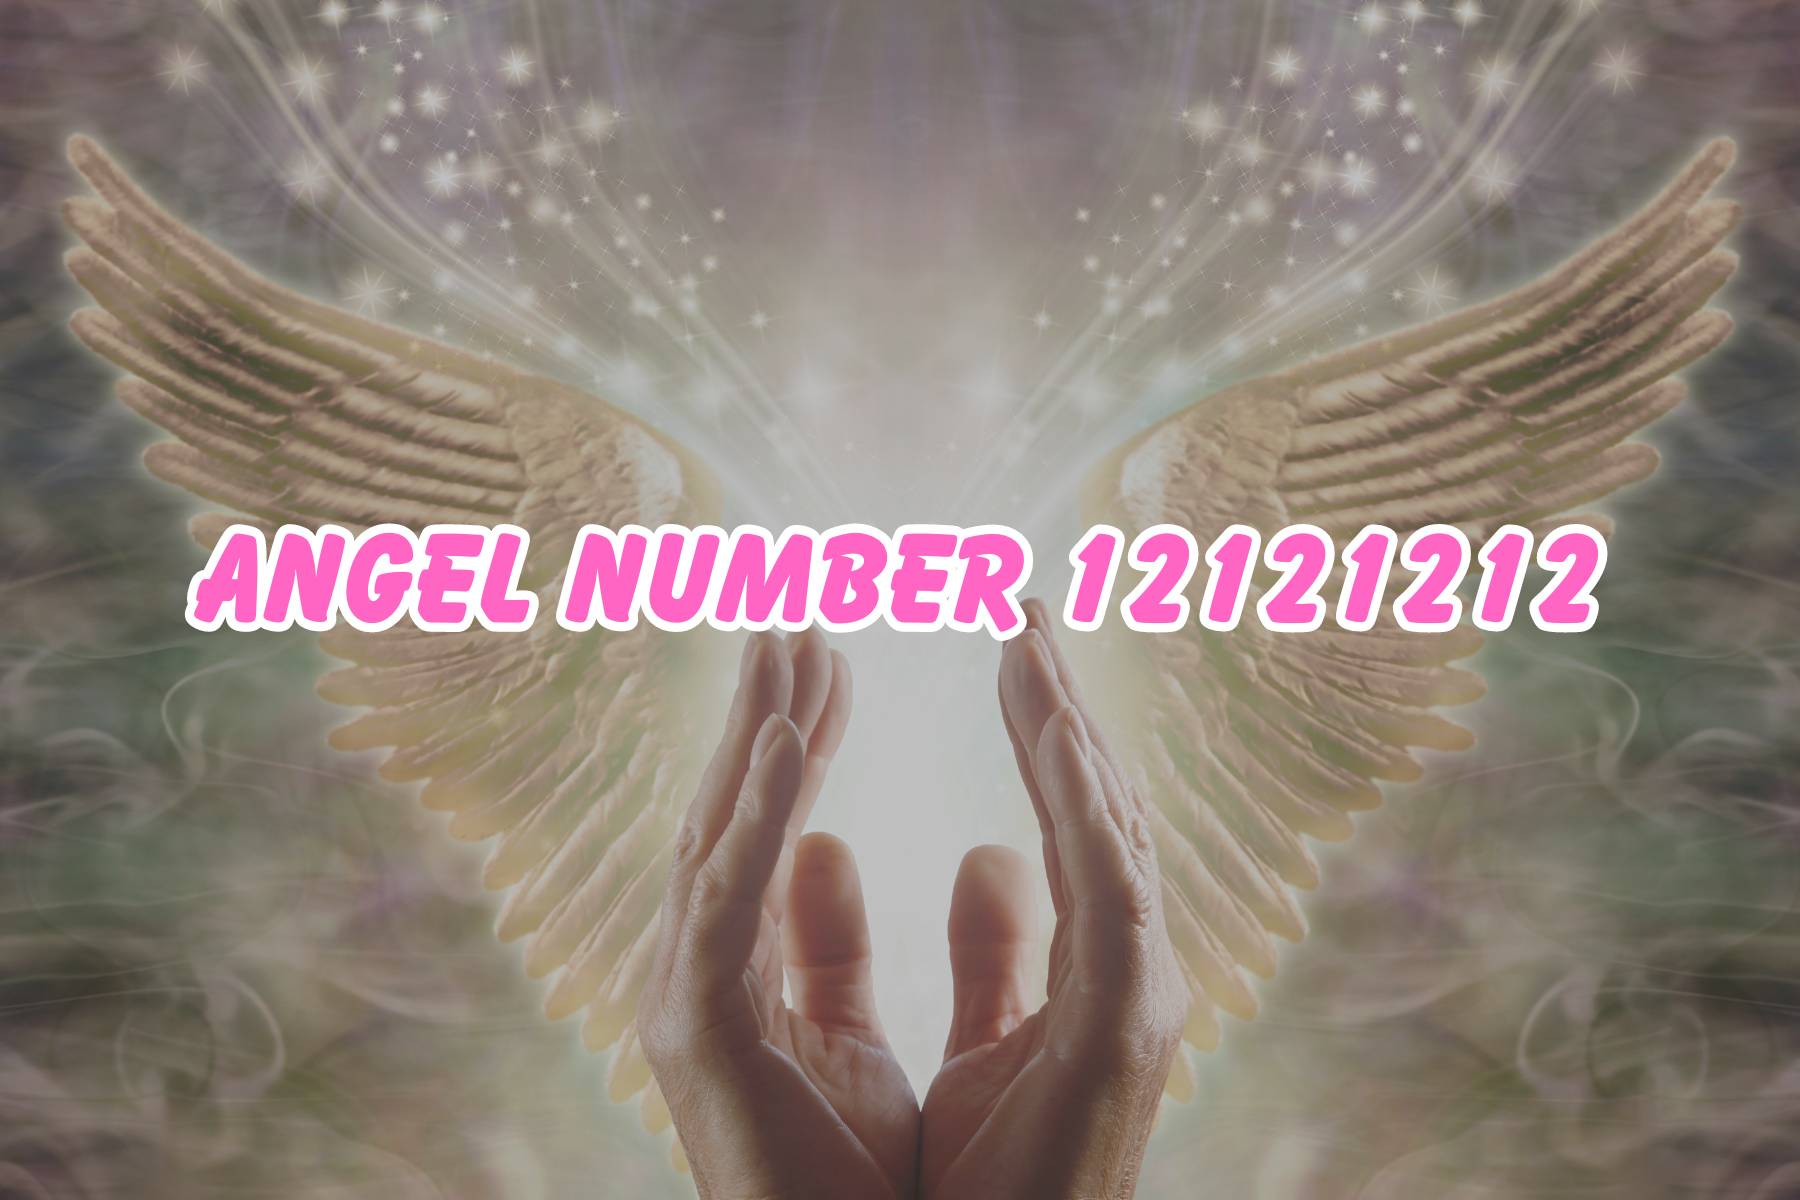 Angel Number 12121212